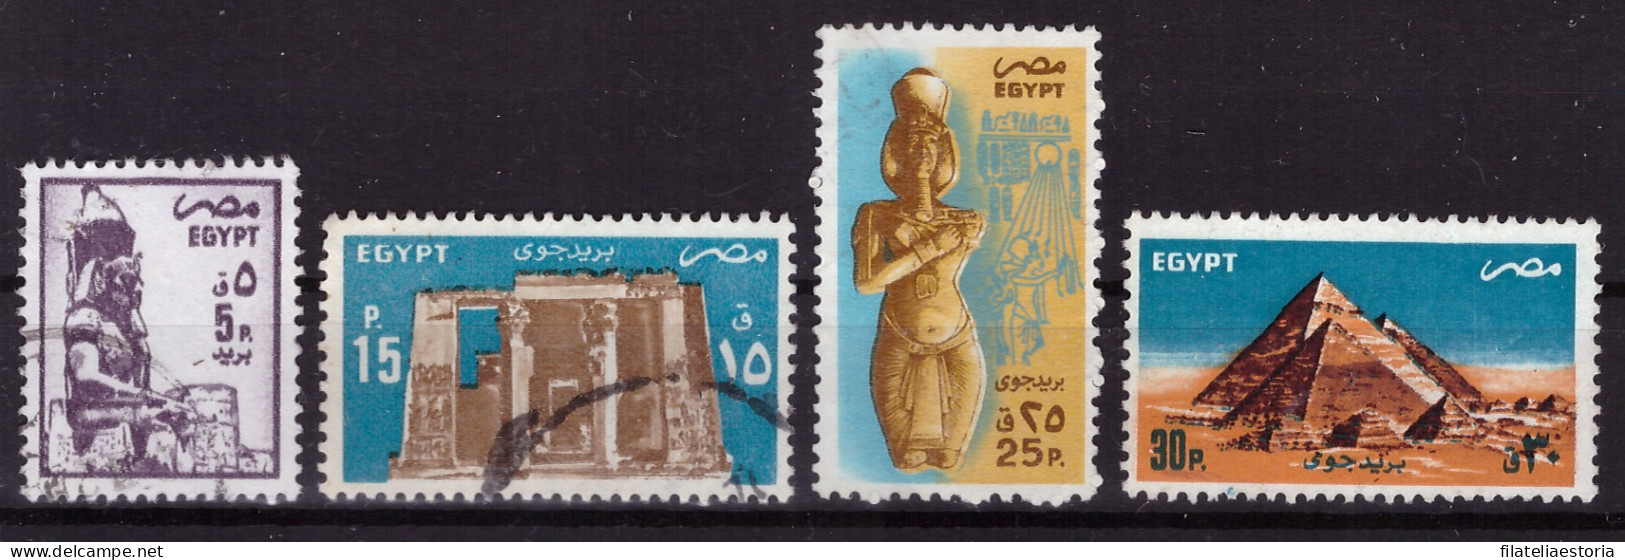 Egypte 1985/1998 - Oblitéré - Monuments - Art - Michel Nr. 1501 1506 1509-1510 (egy361) - Gebraucht